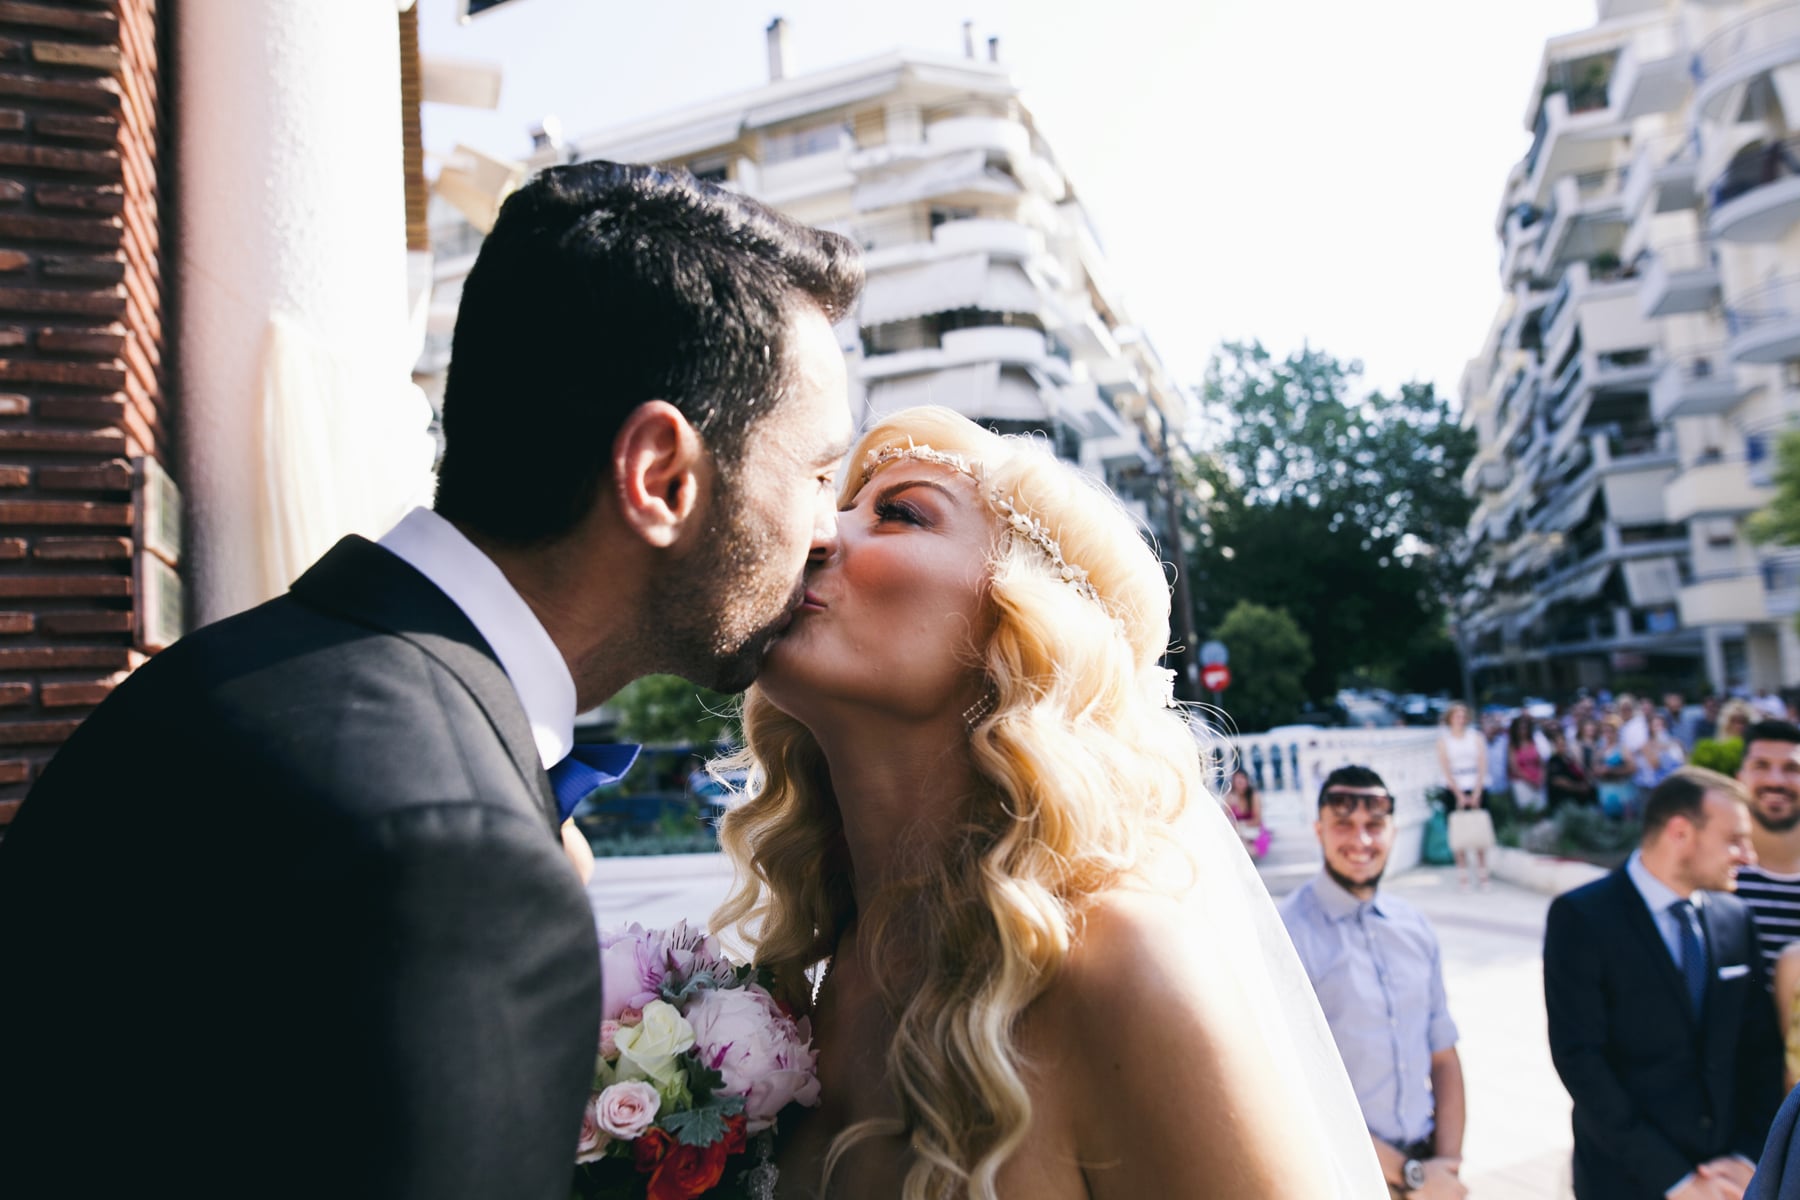 A romantic wedding in Serres